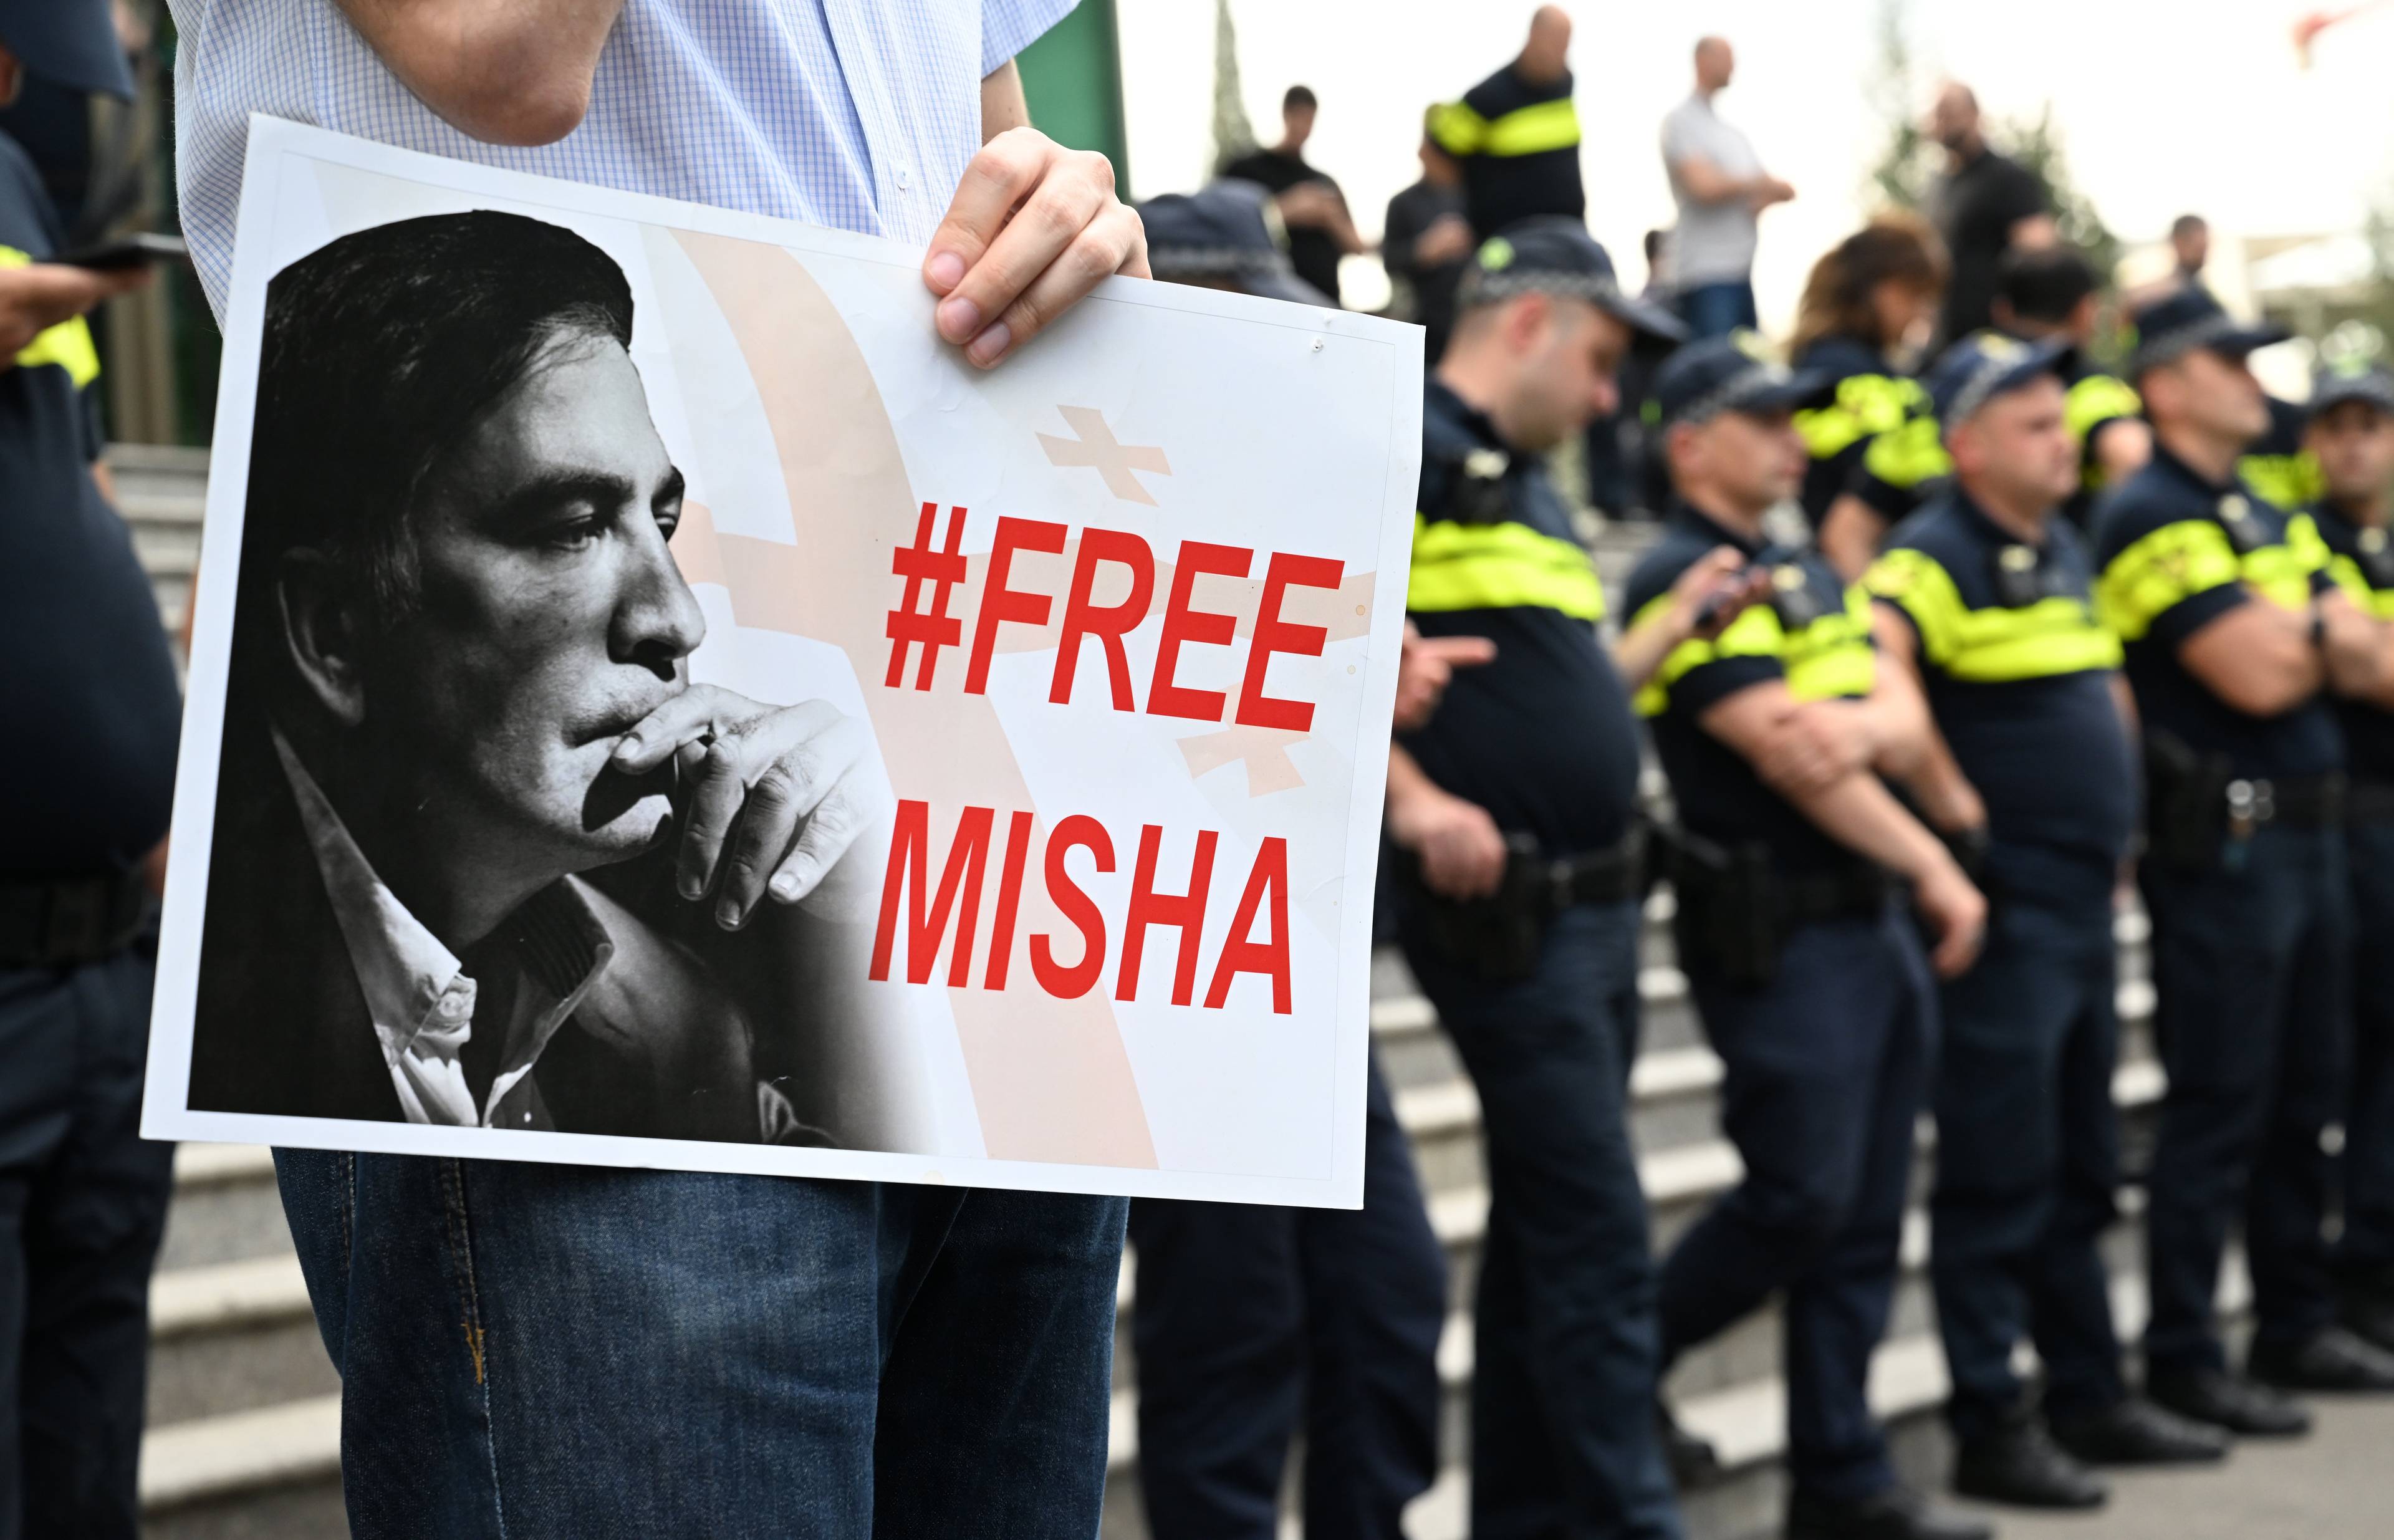 Gruzini demonstrujący z plakatem "#free Misha"